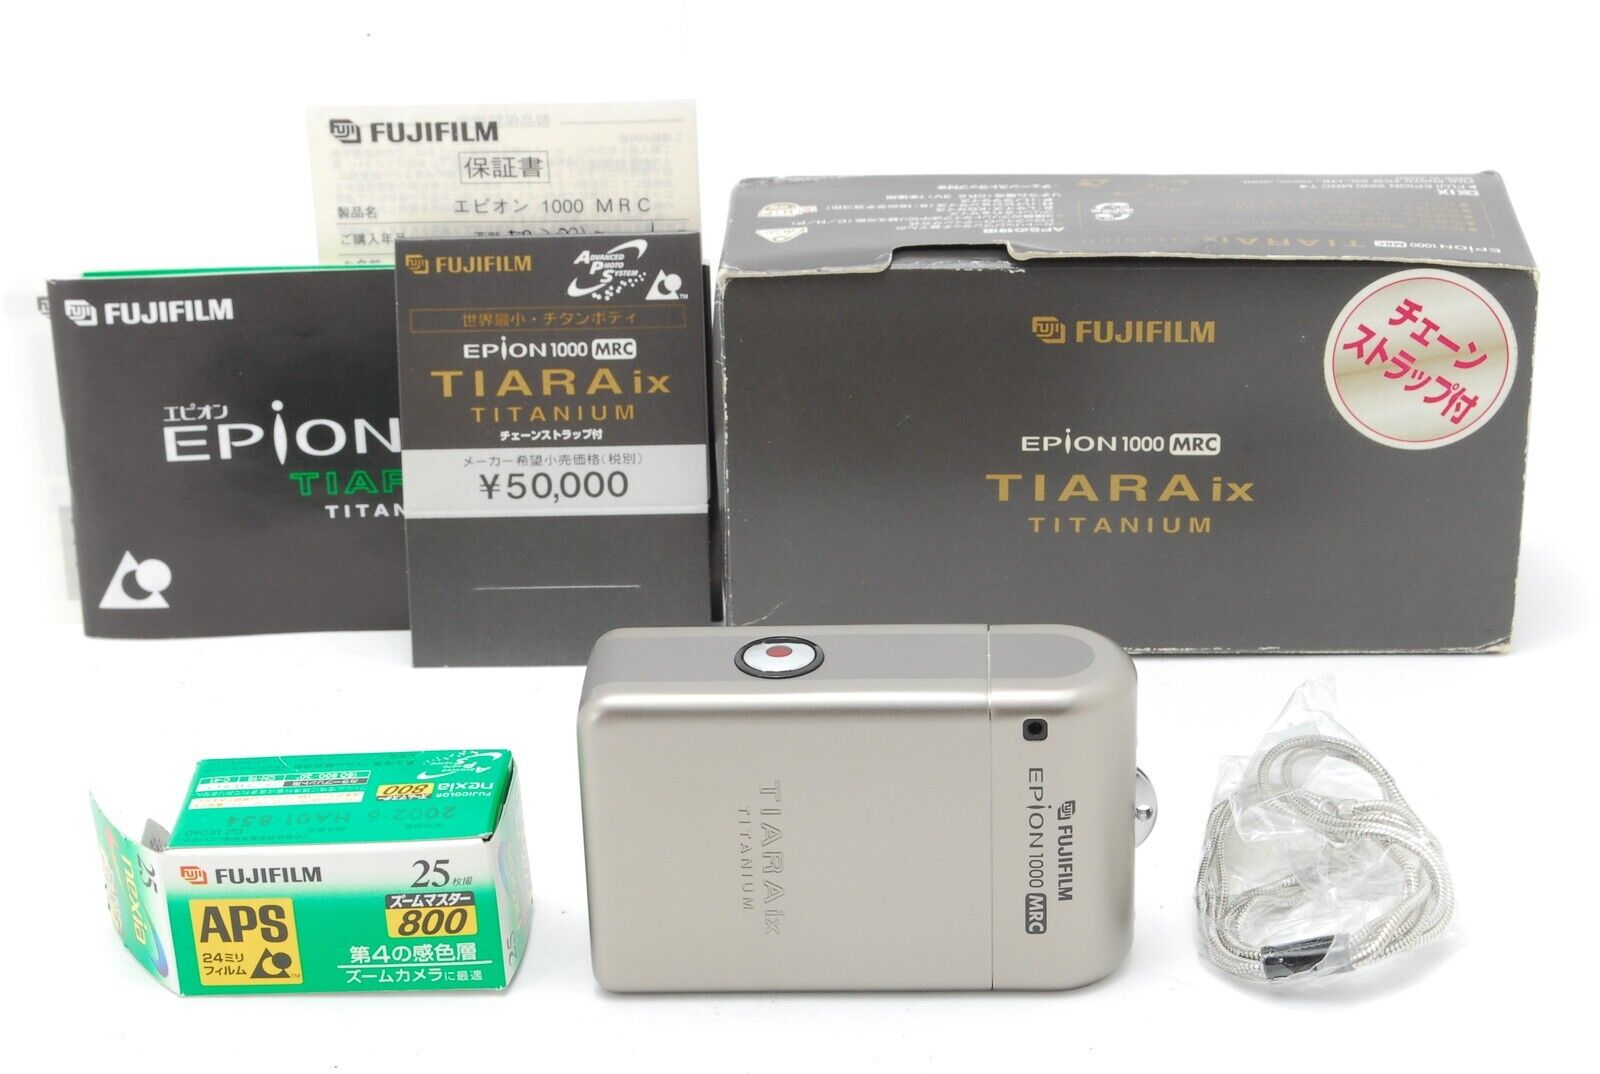 【Unused】 Fujifilm Epion 1000 MRC Tiara ix Titanium APS Camera From JAPAN